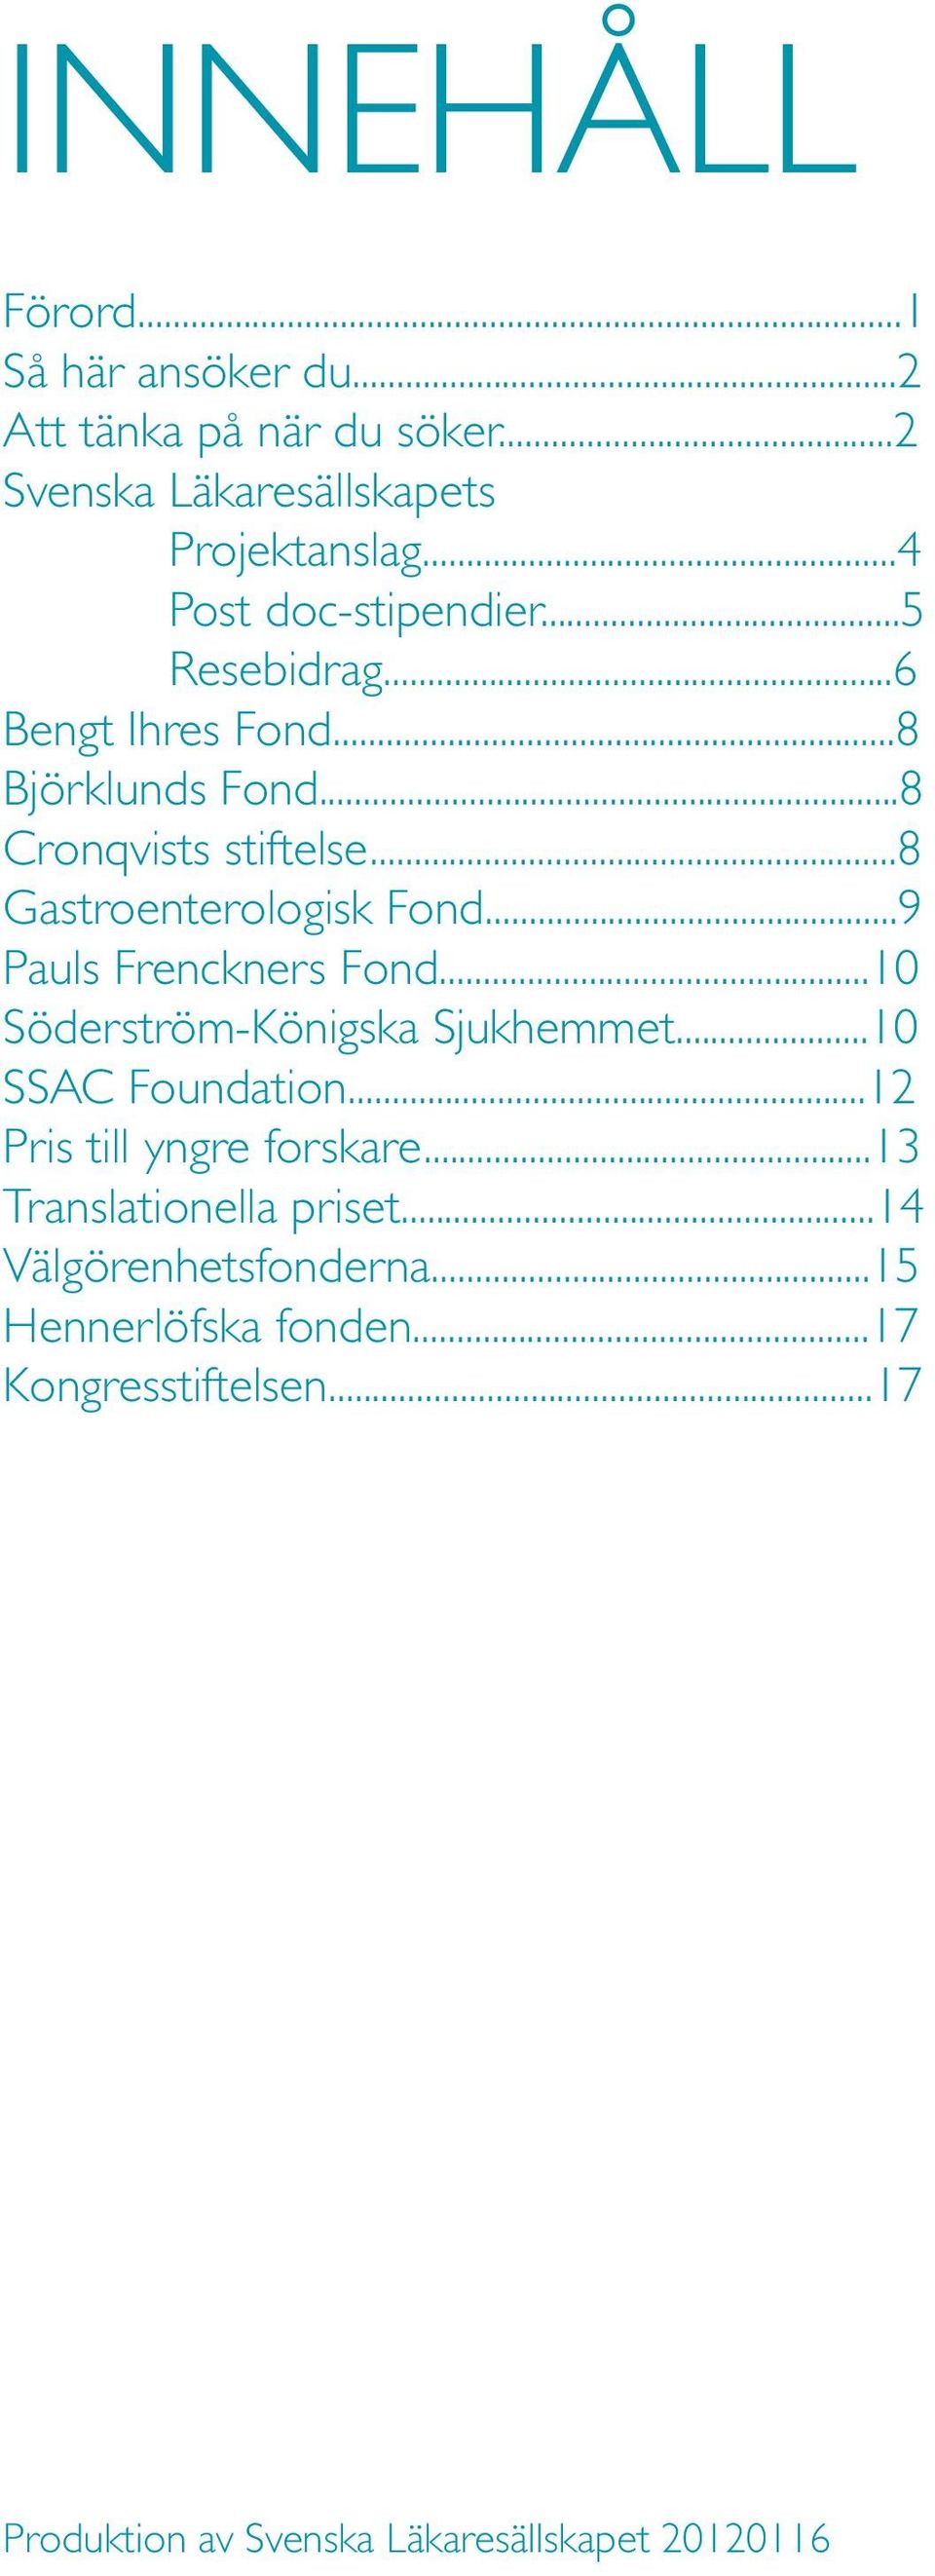 ..8 Gastroenterologisk Fond...9 Pauls Frenckners Fond...10 Söderström-Königska Sjukhemmet...10 SSAC Foundation.